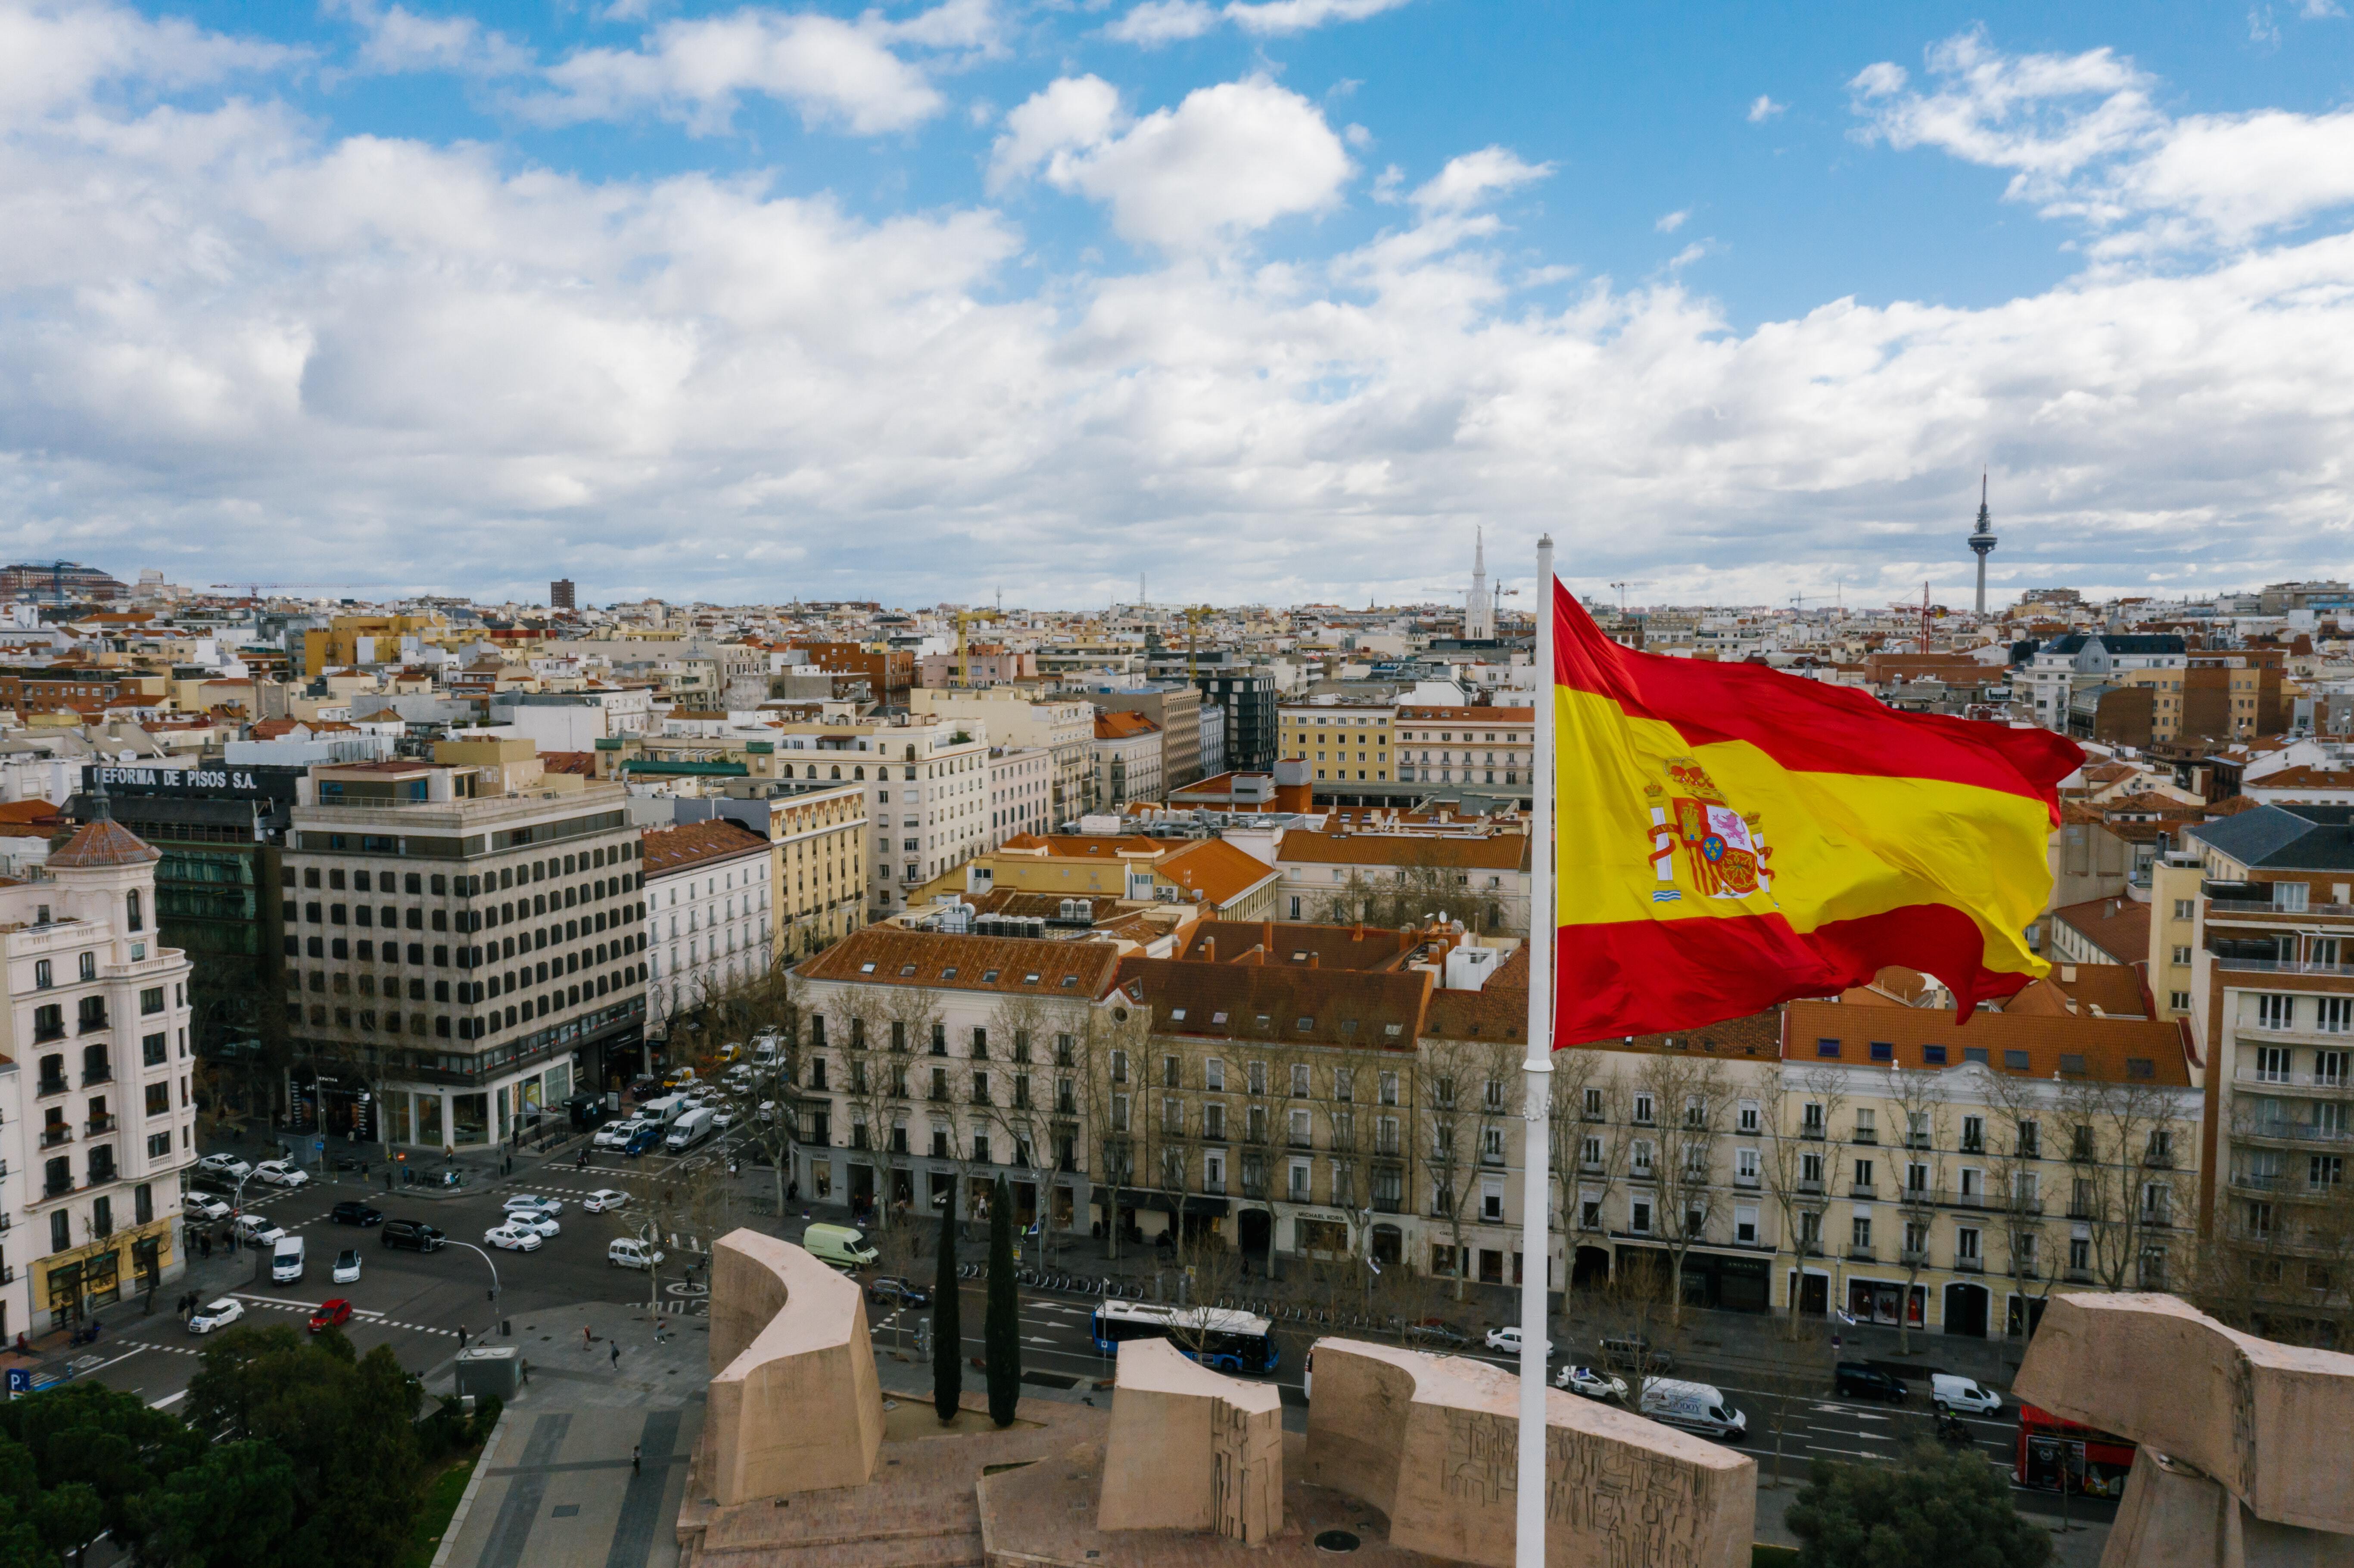 Espagne drapeau